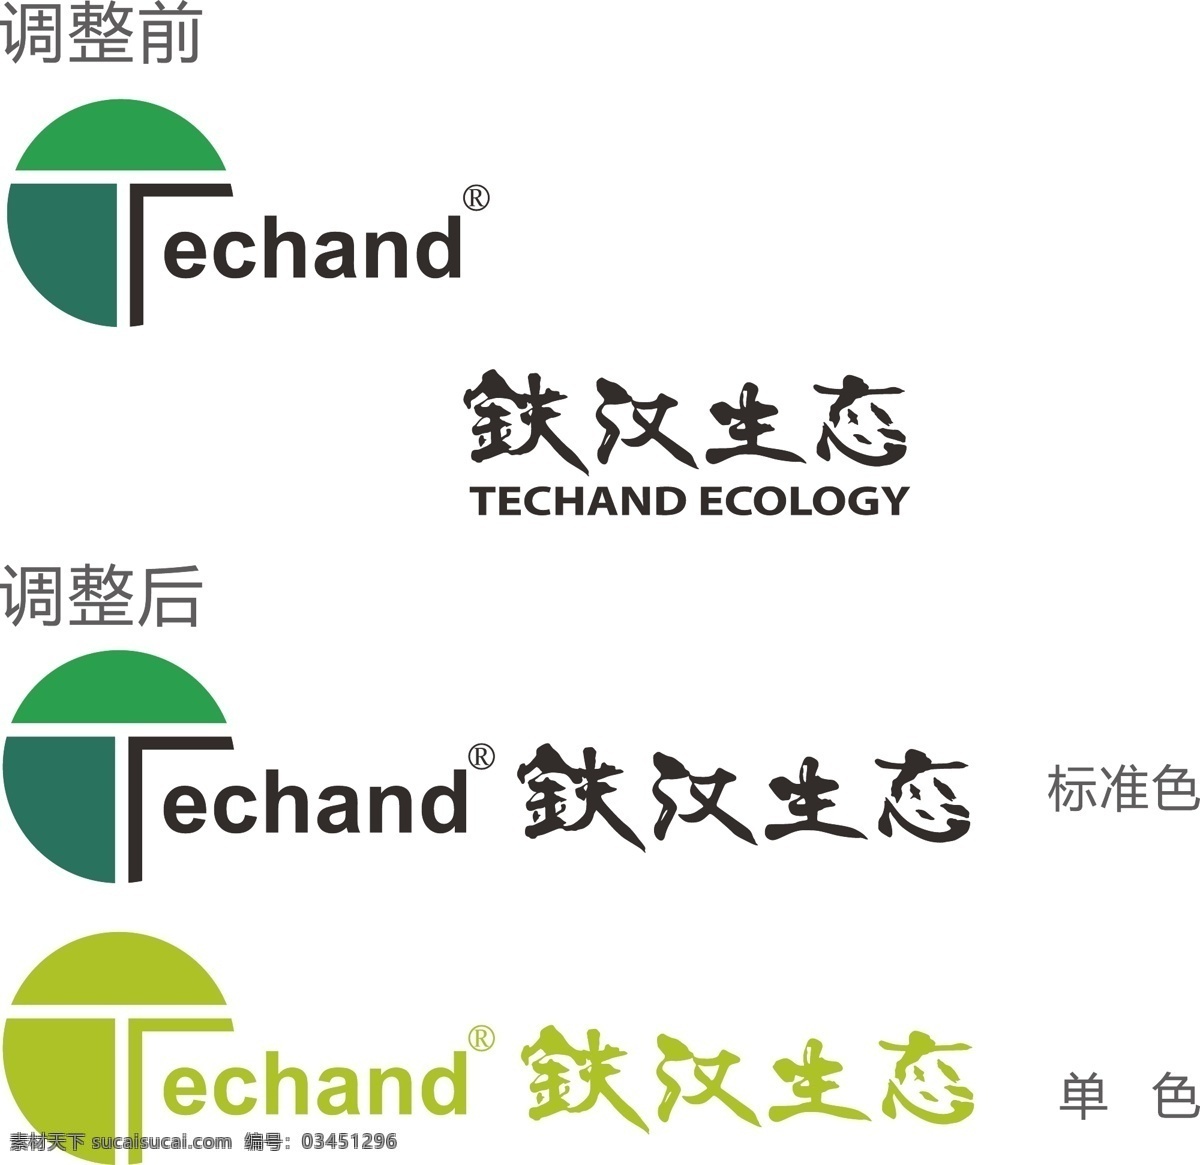 铁汉 生态 logo 铁汉生态 环境 股份 有限公司 企业 商标 标志 标识 cs5 矢量 echand 标识标志图标